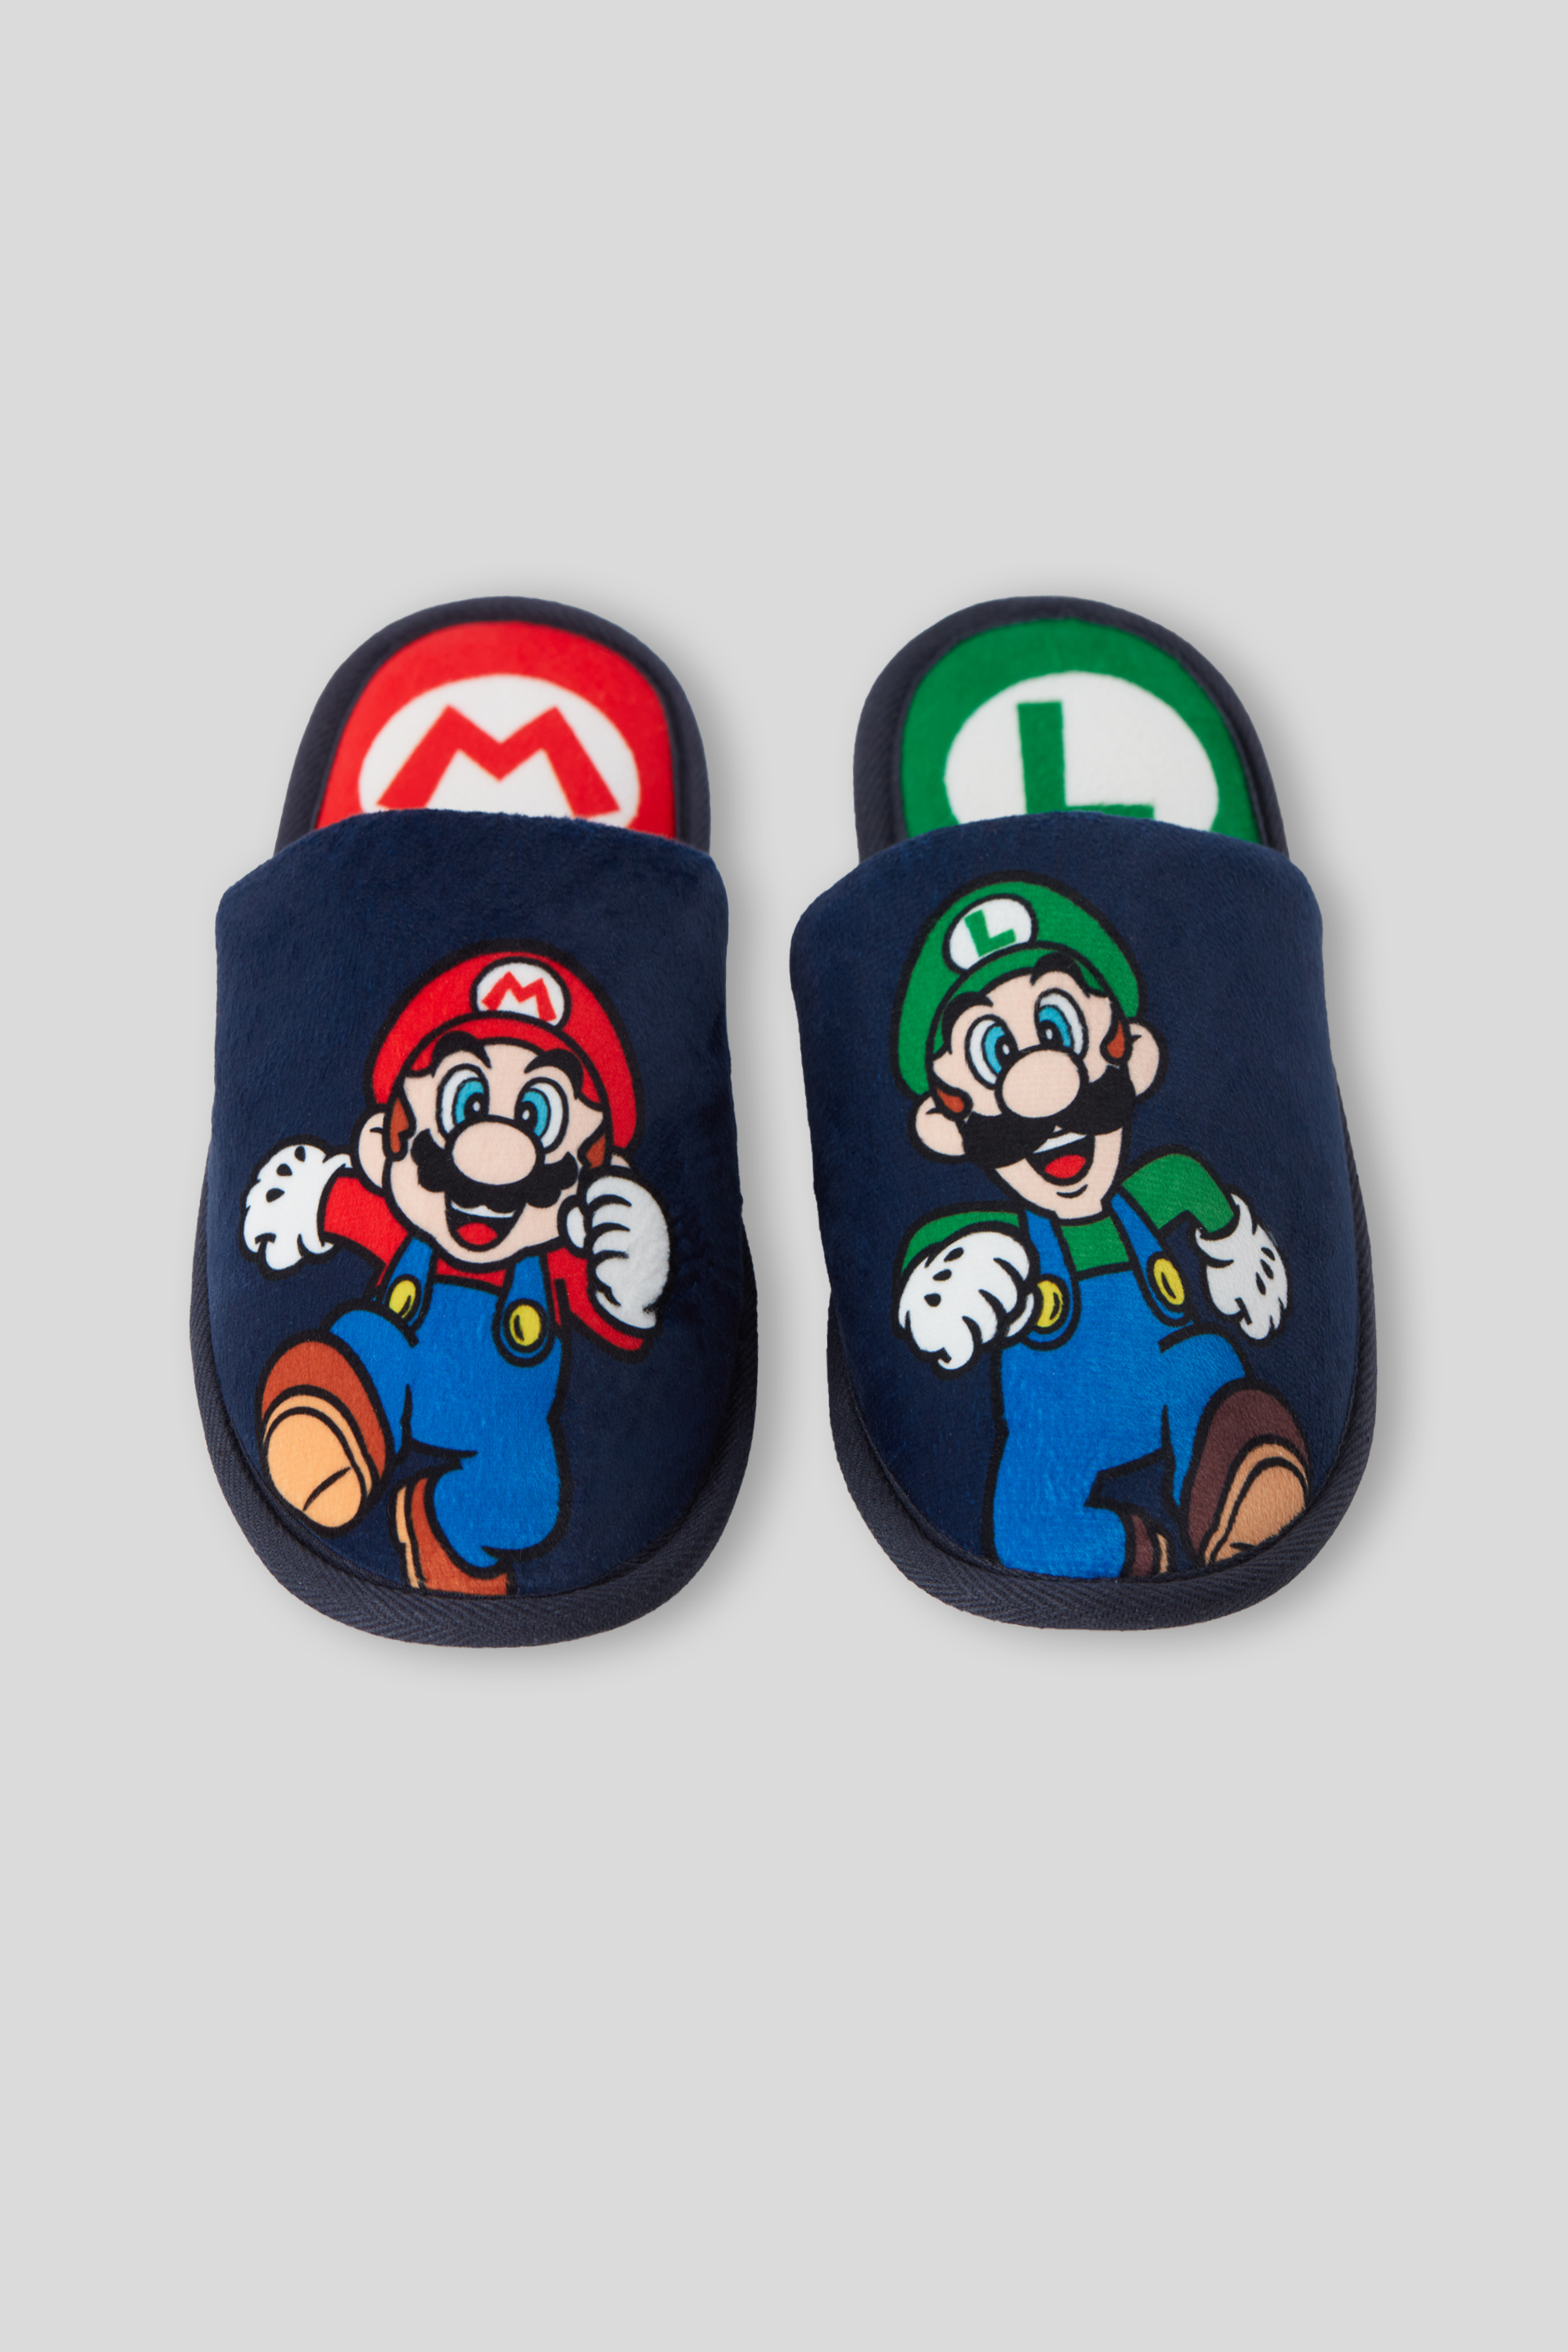 Pantoufles en coton Super Mario Yoshi, pantoufles en peluche d'hiver,  semelle intérieure chaude et douce Anime, non ald, UNIS issement,  chaussures de maison confortables